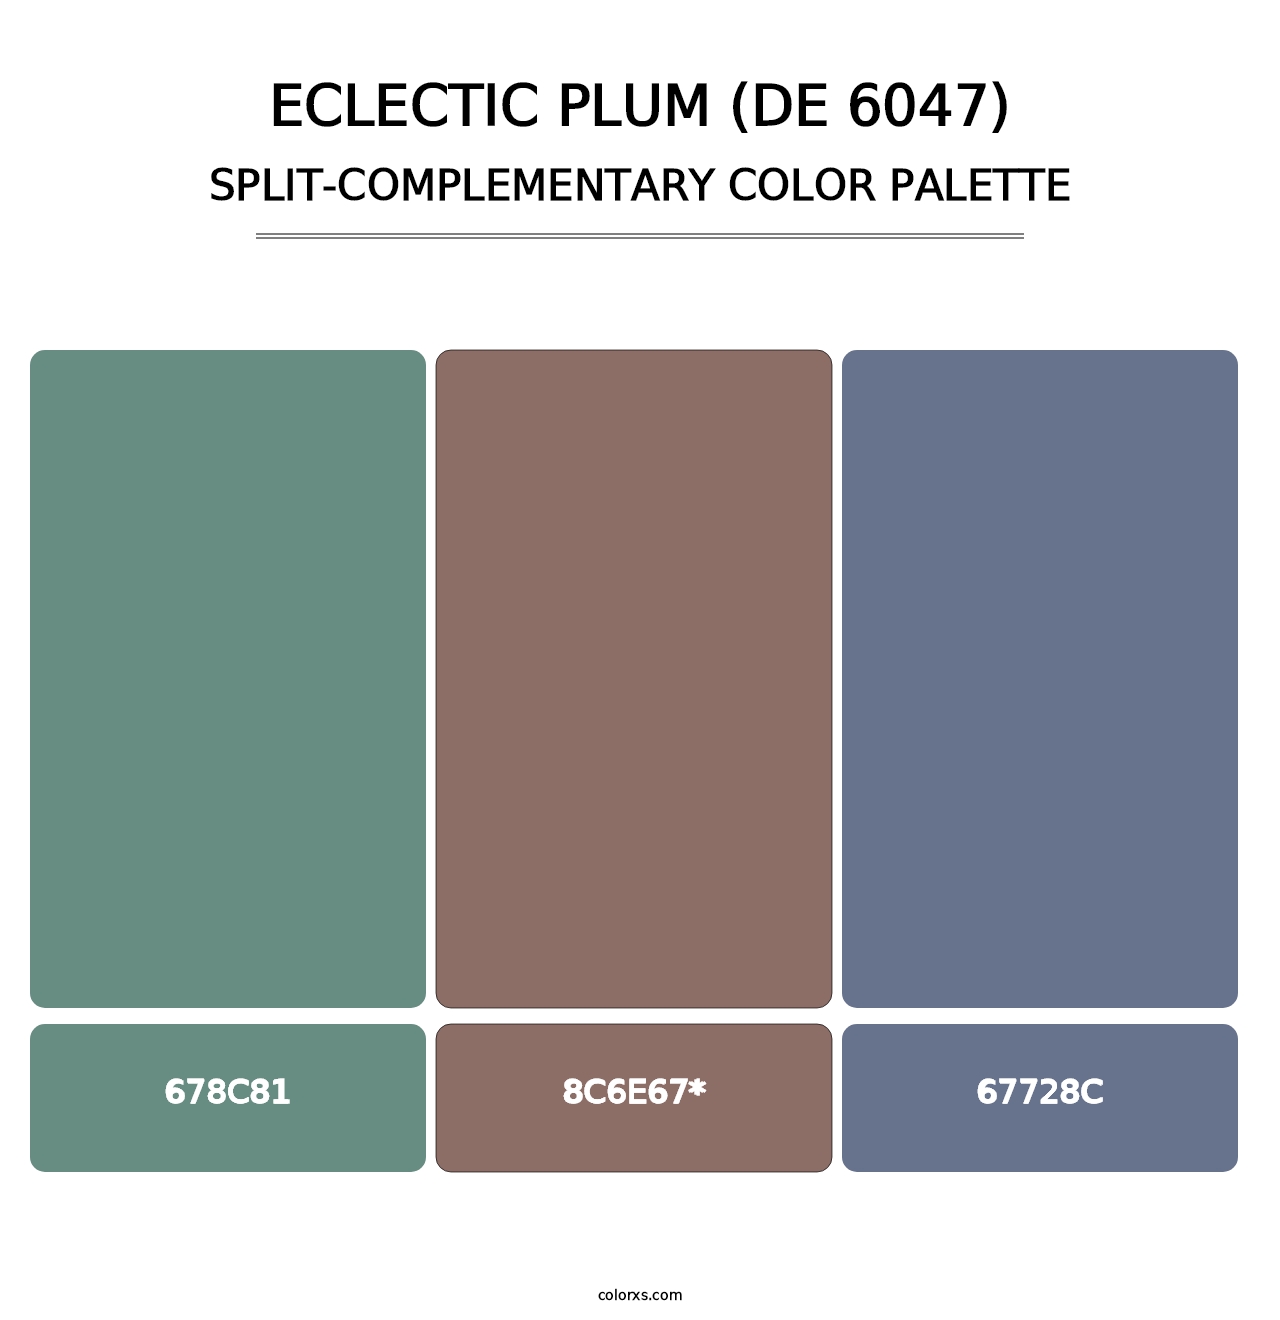 Eclectic Plum (DE 6047) - Split-Complementary Color Palette